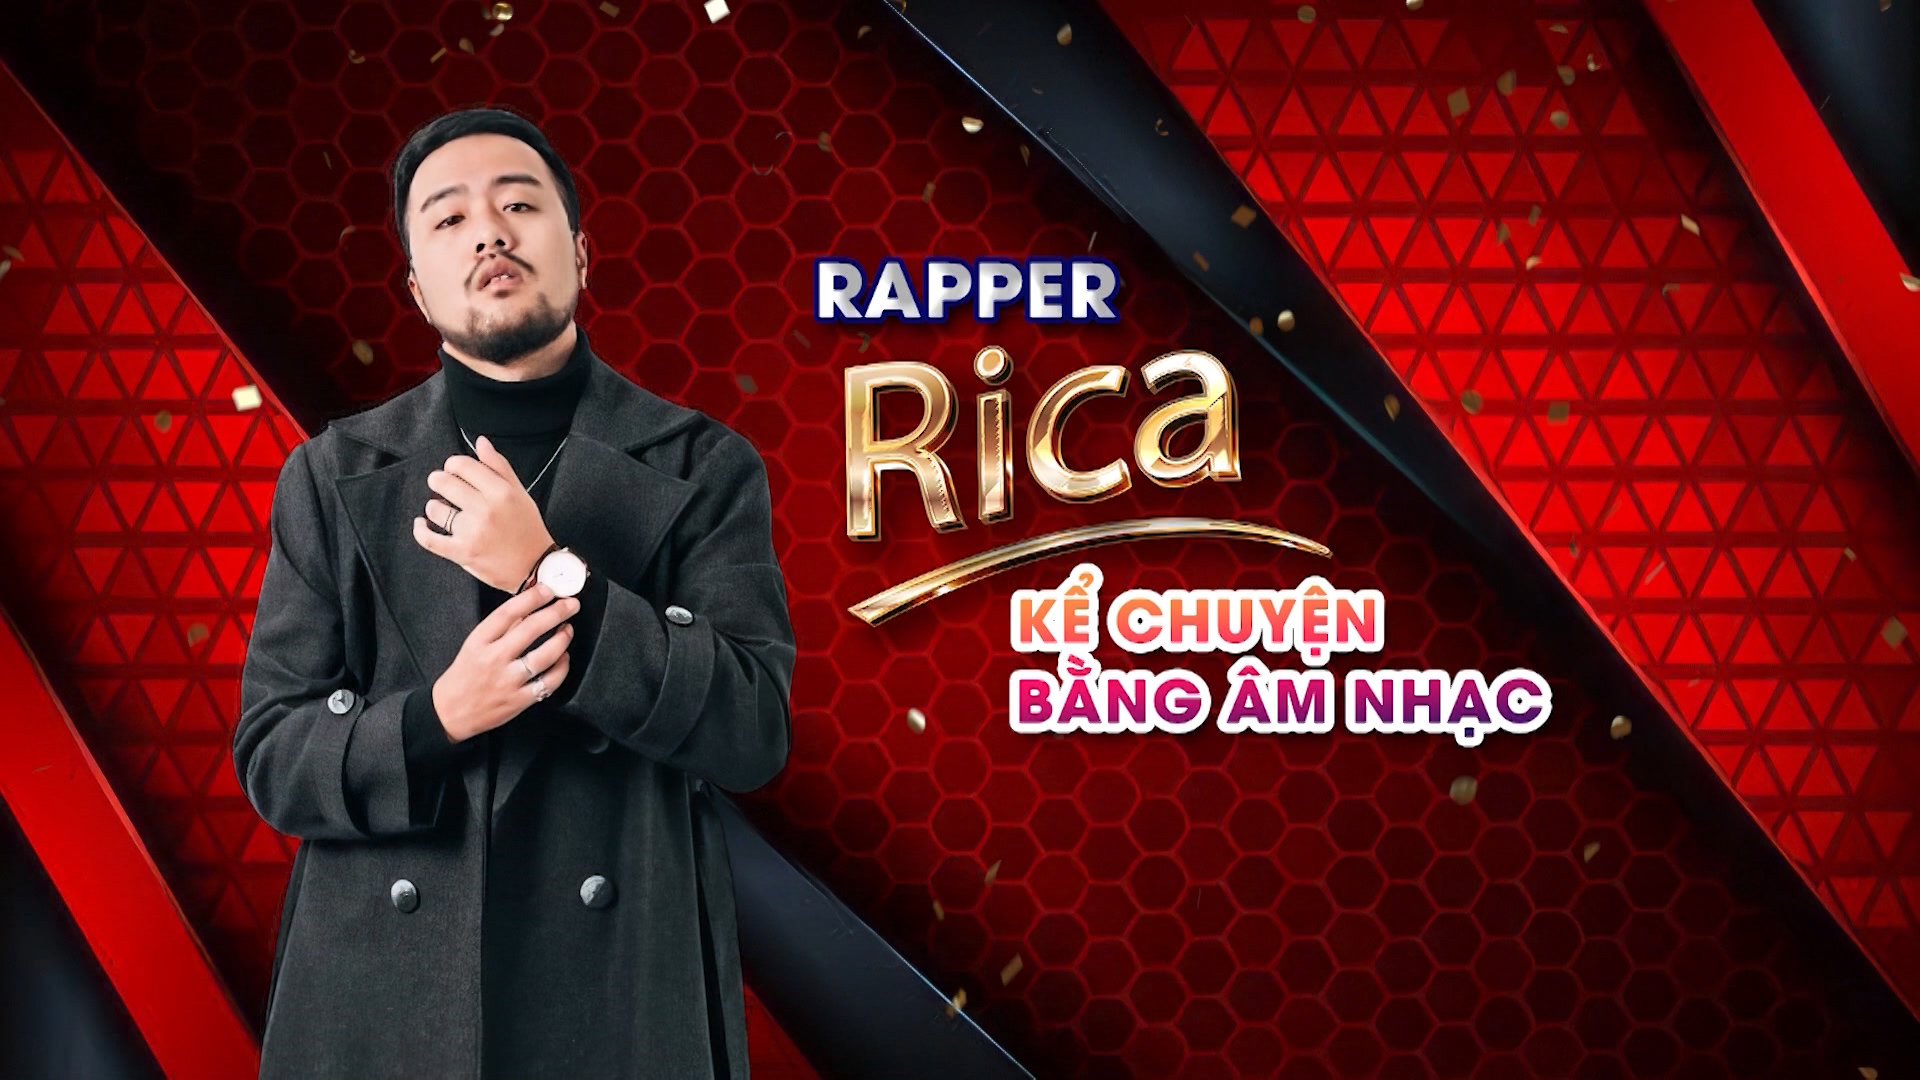 Trò chuyện cuối tuần: Rapper RICA - kể chuyện bằng âm nhạc